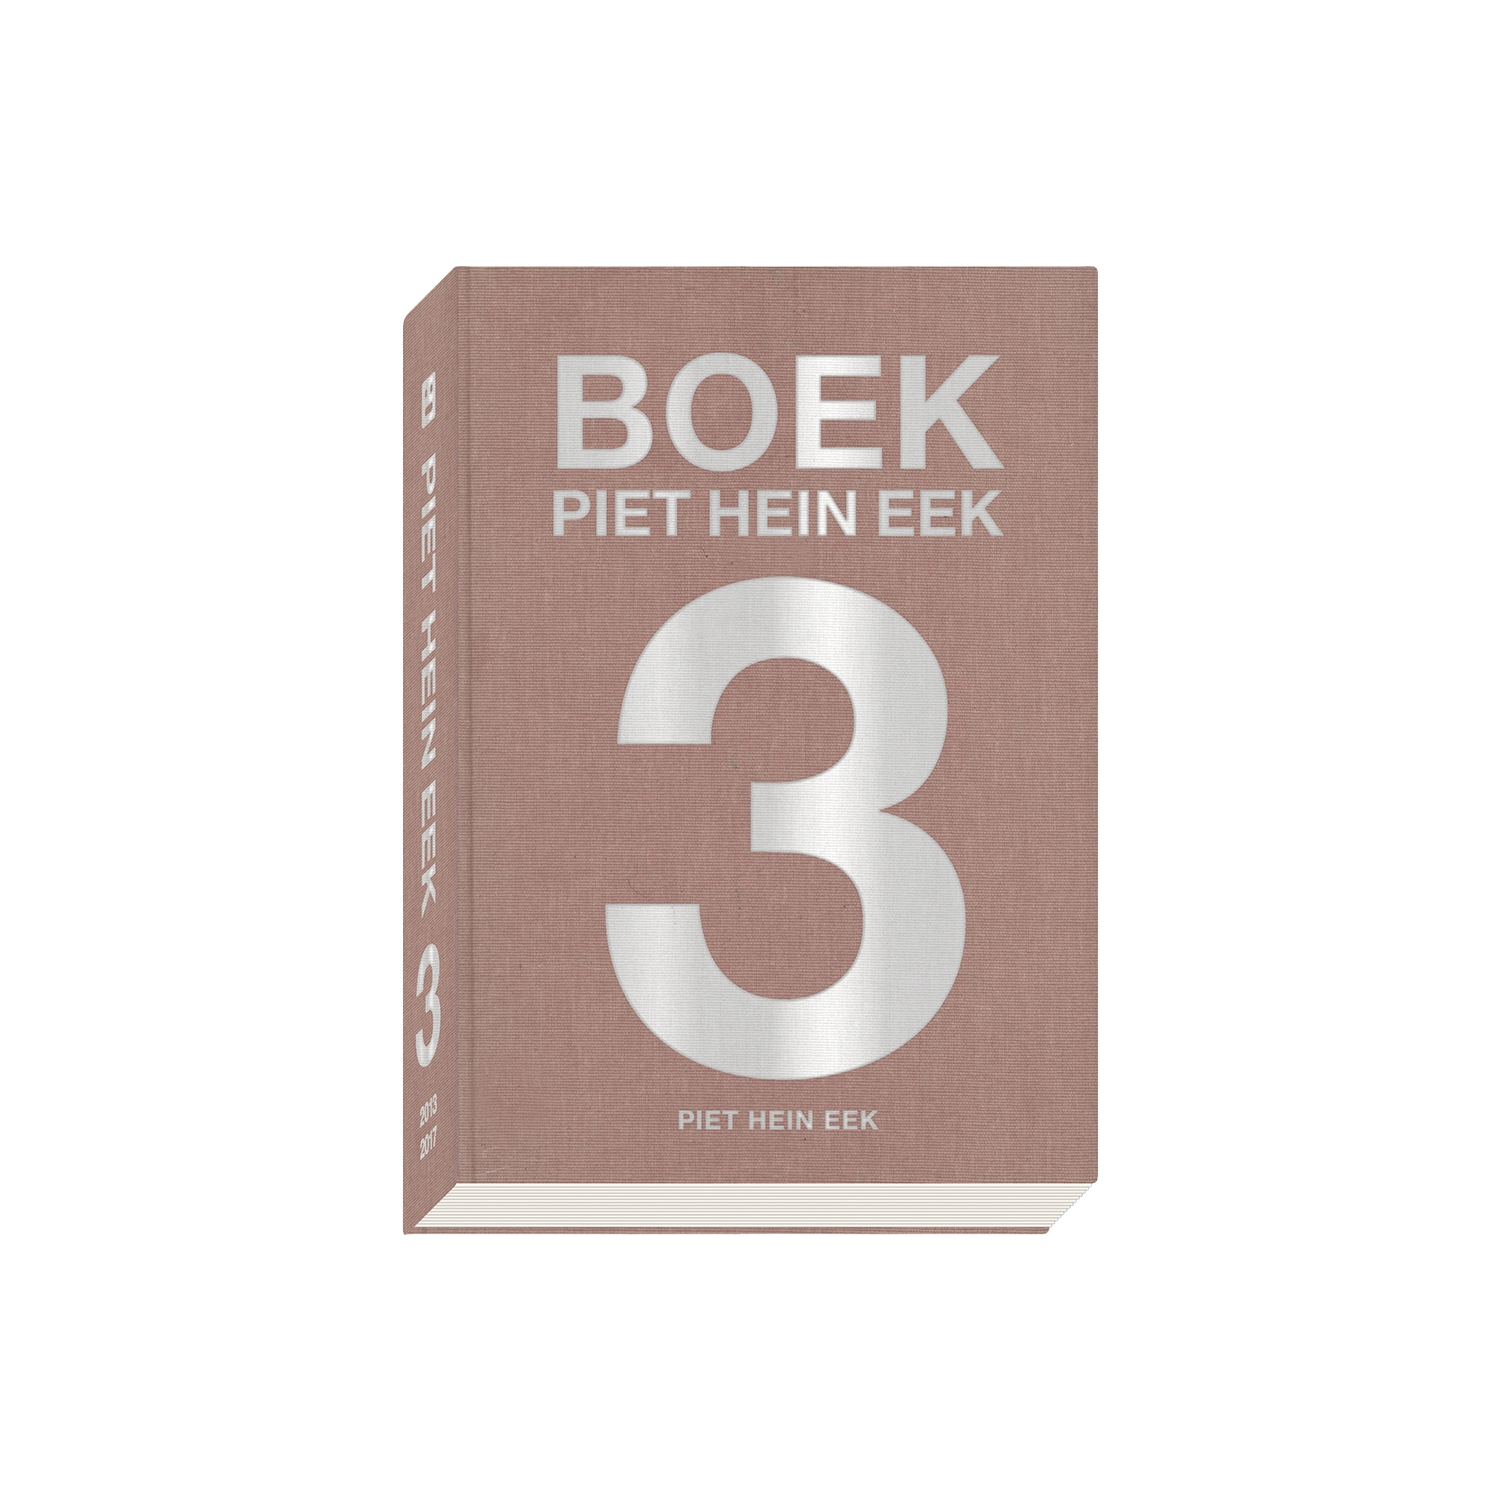 Boek Piet Hein Eek - Piet Hein Eek | Frozen Fountain